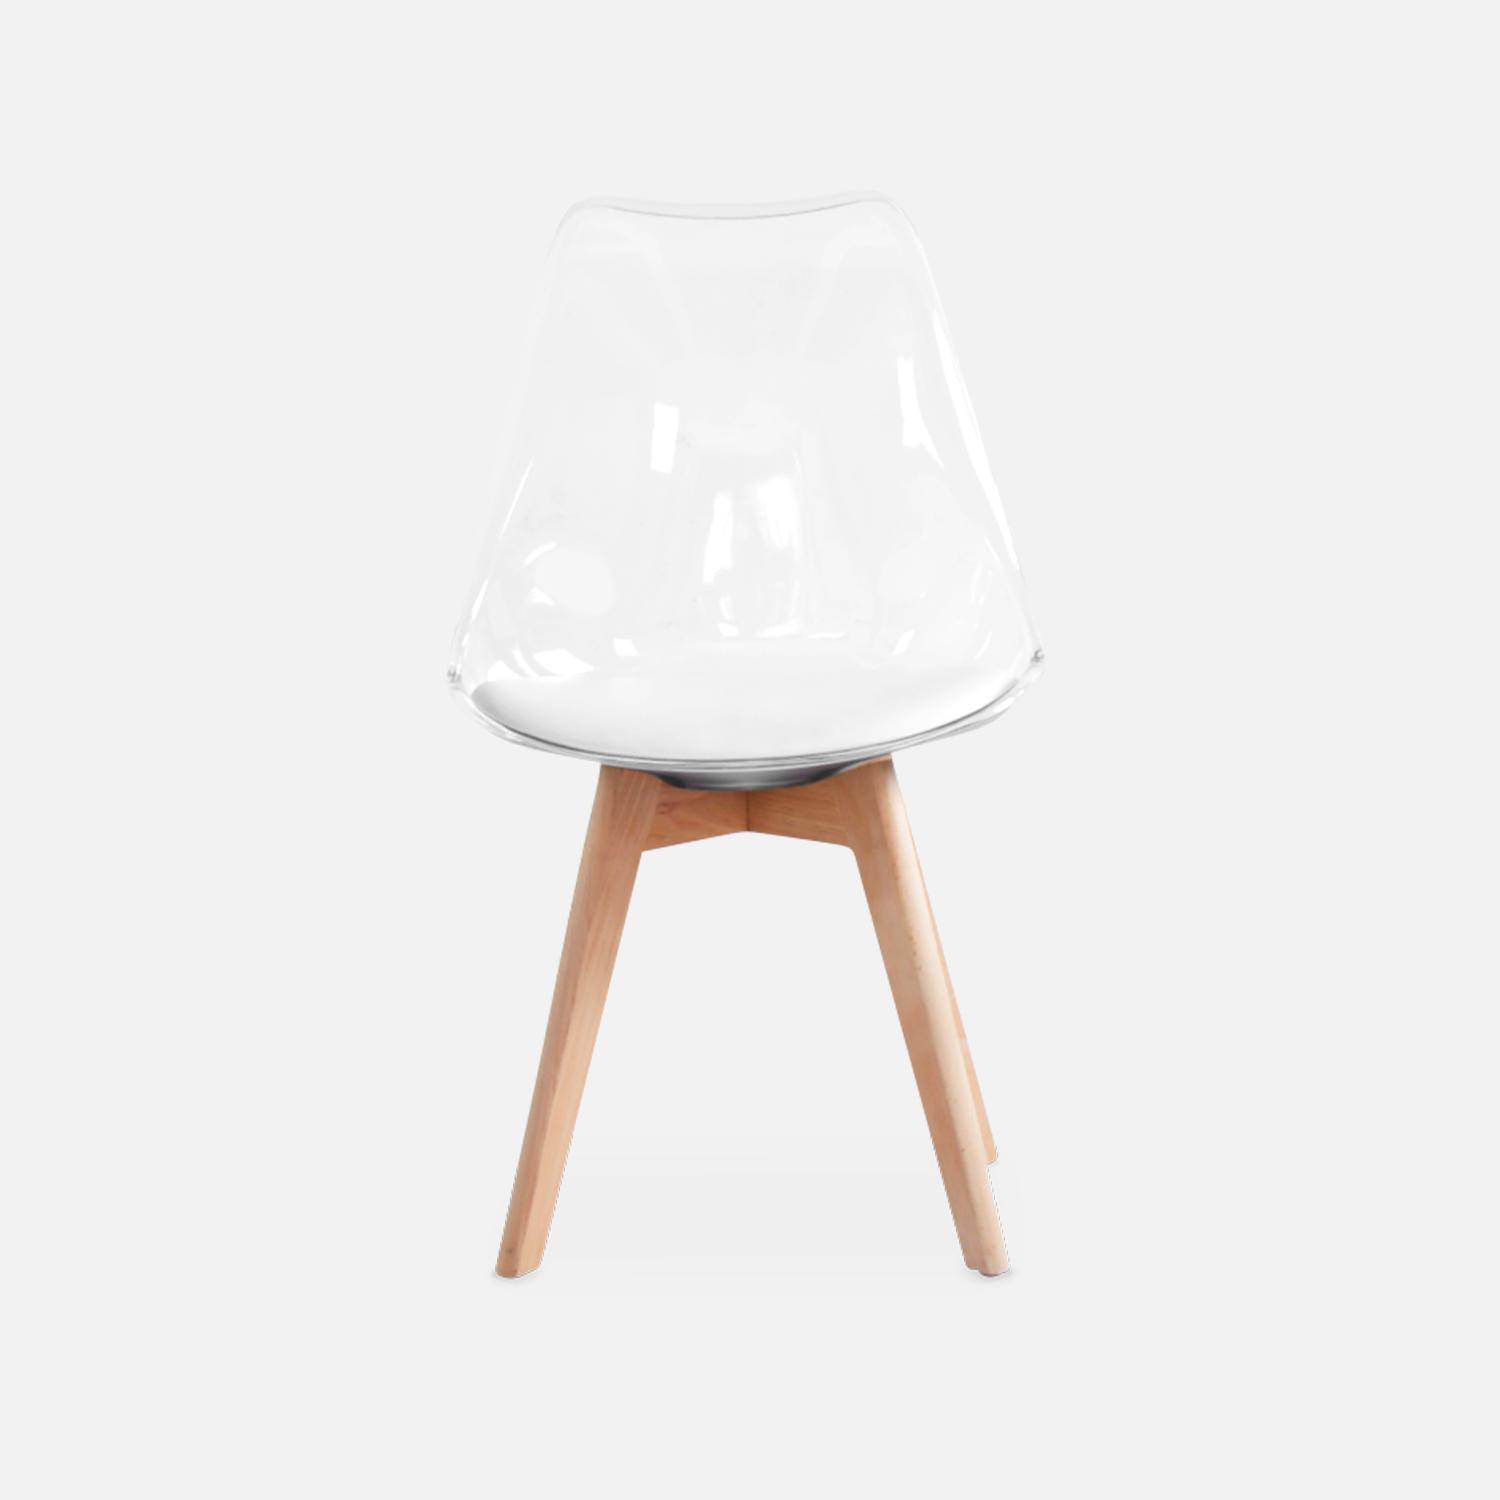 Juego de 4 sillas escandinavas - Lagertha - patas de madera, asientos individuales, cojín blanco, carcasa transparente  Photo8